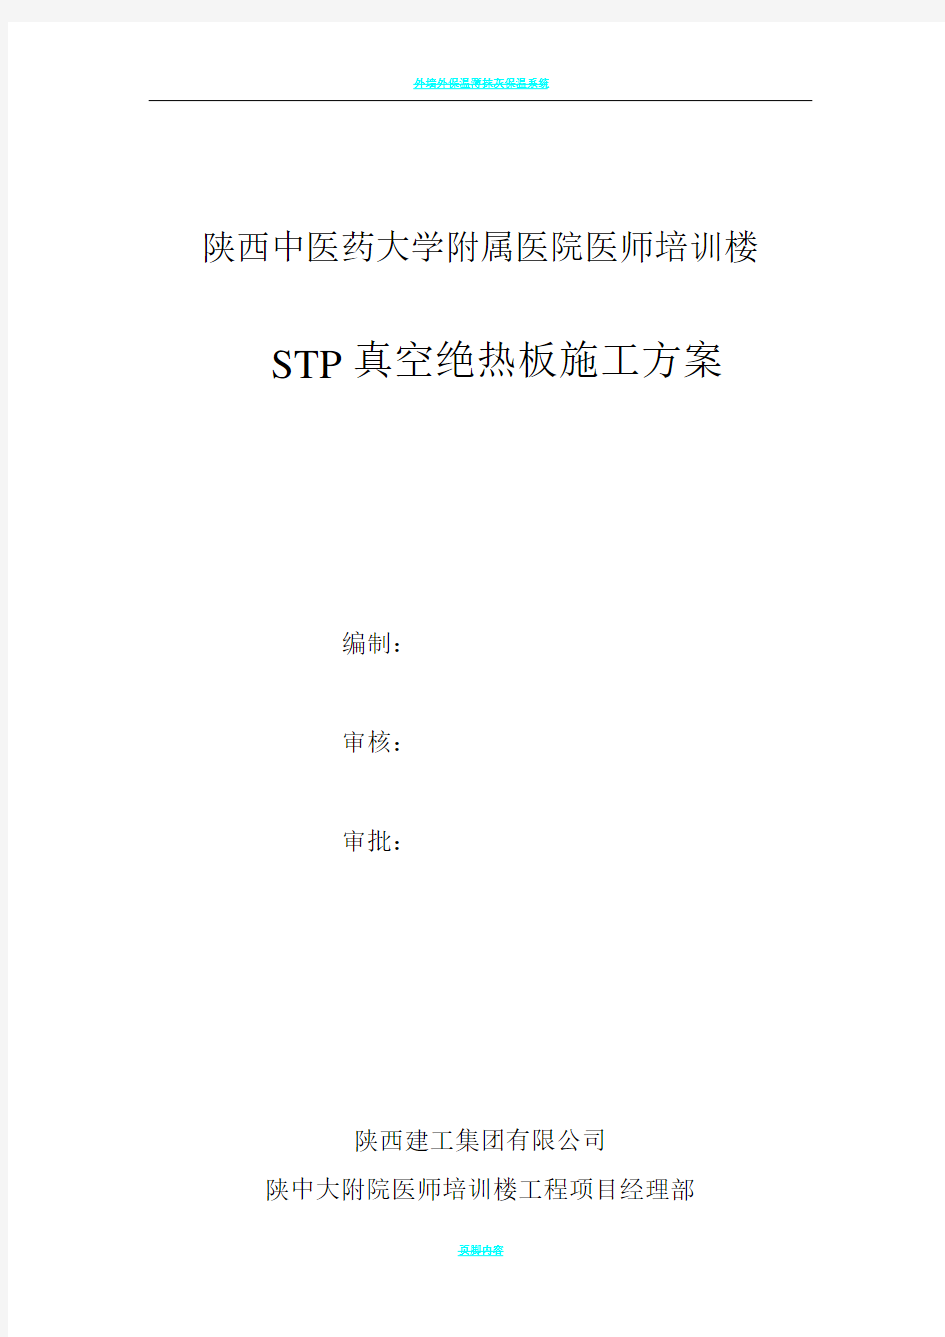 保温工程施工方案(STP真空绝热板)